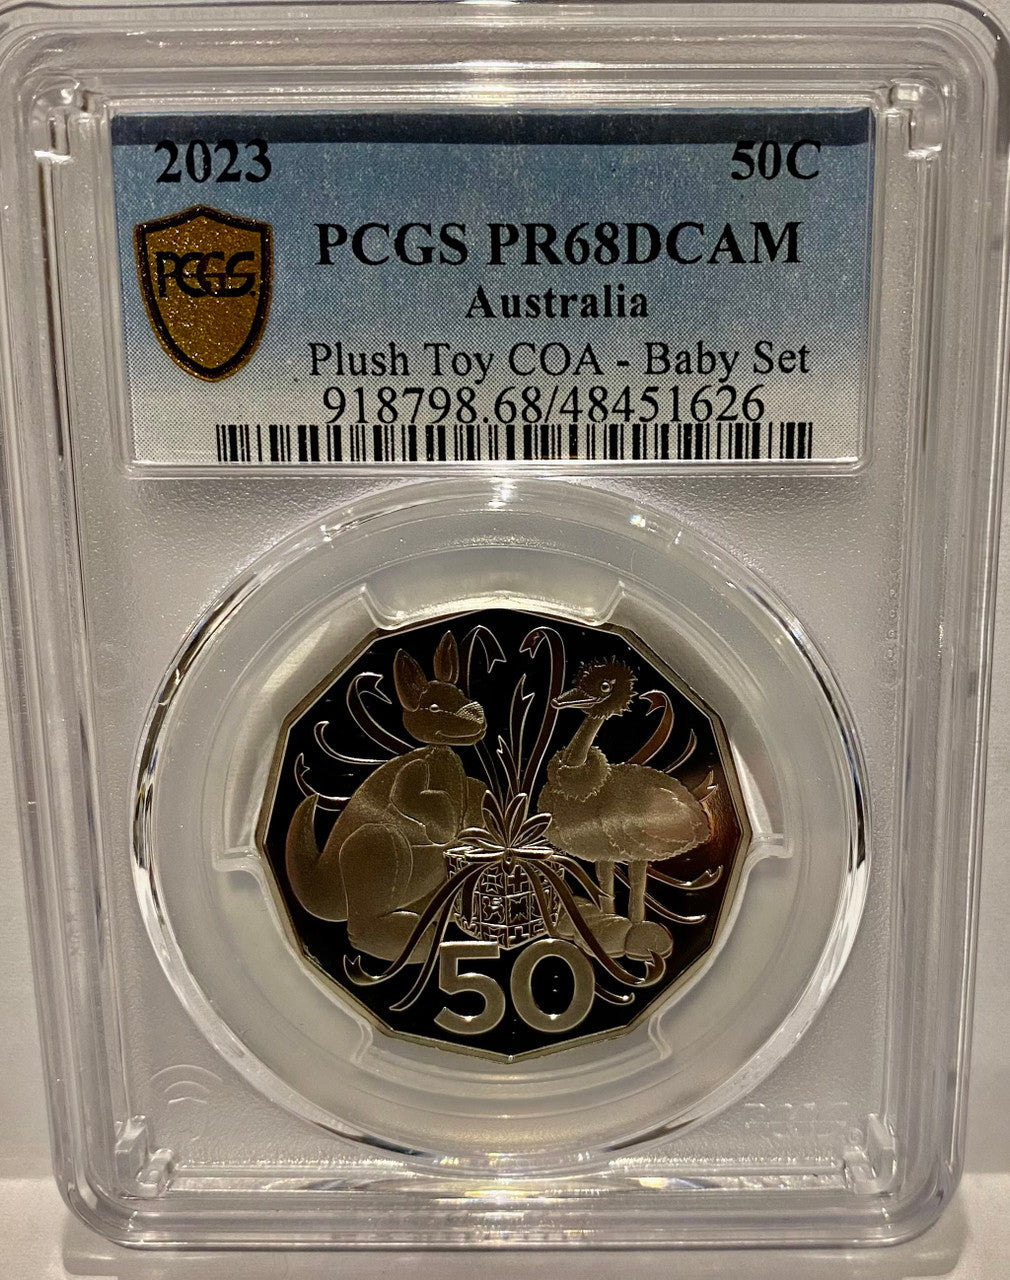 Royal Australian Mint 2023 Plush Toy COA - Baby Set 50c Coin - PCGS PR68DCAM